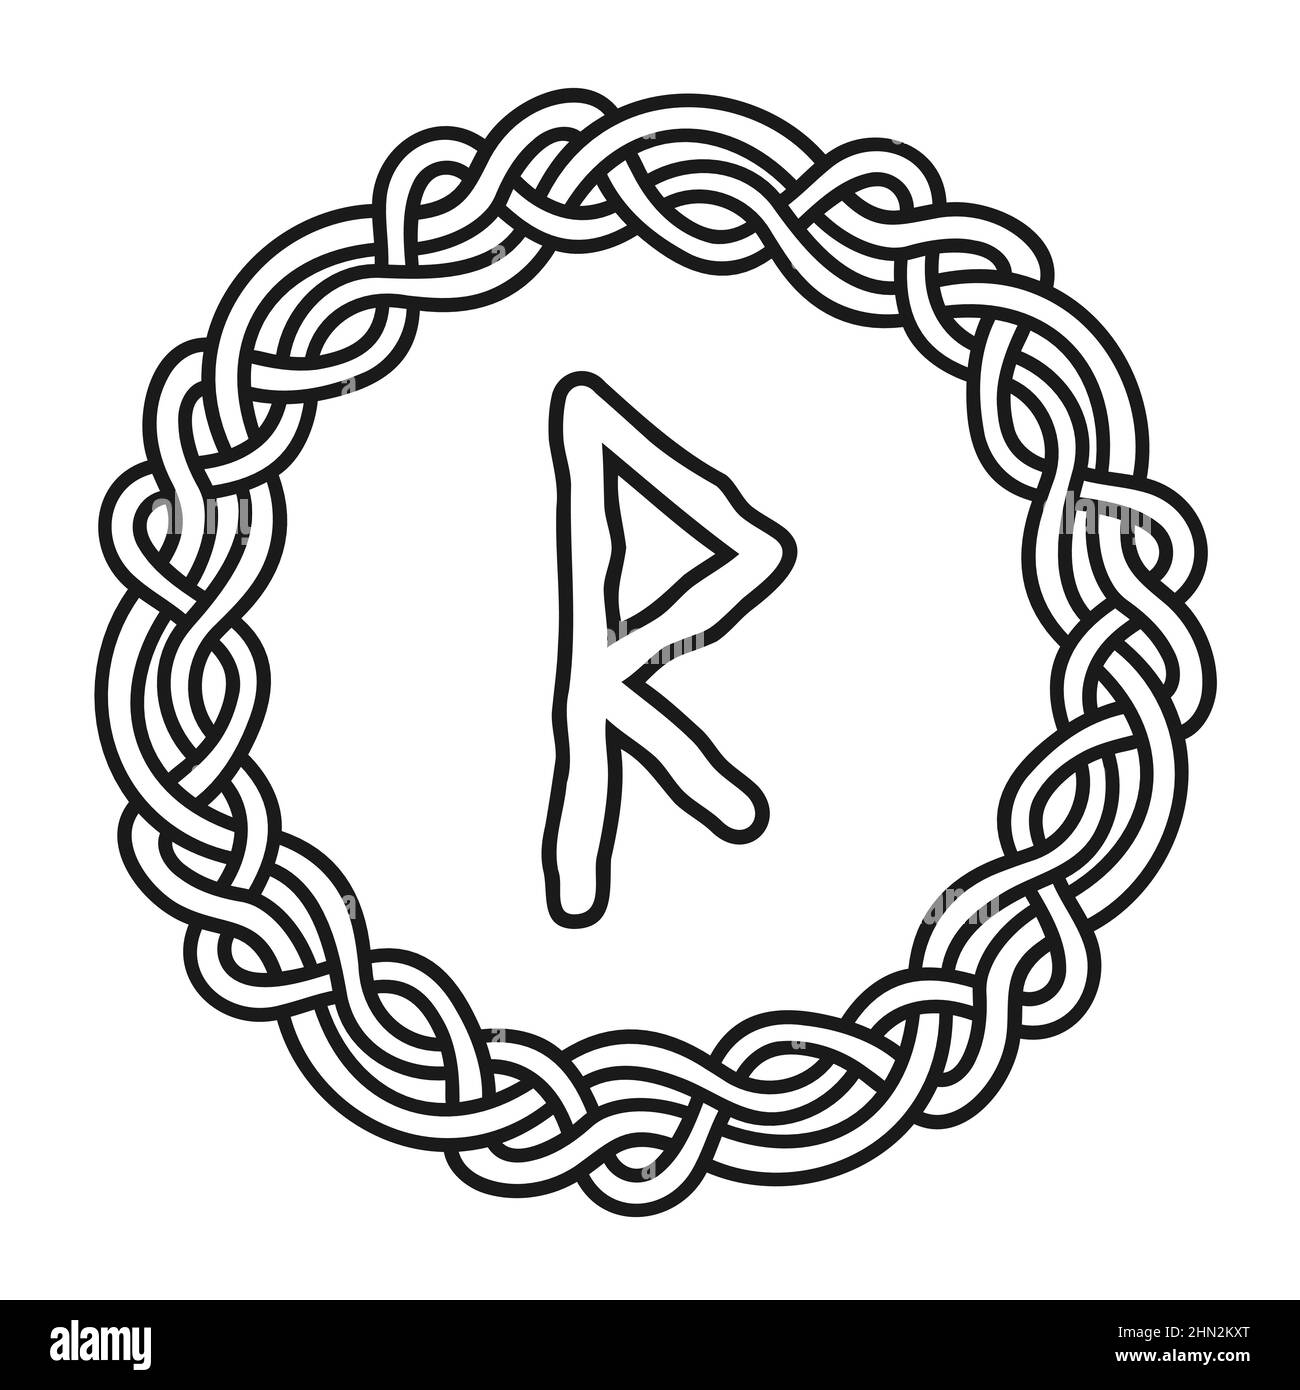 Rune Raido in un cerchio - un antico simbolo o segno scandinavo, amuleto.  Vichingo scrittura. Illustrazione vettoriale disegnata a mano per siti web,  giochi, p Immagine e Vettoriale - Alamy